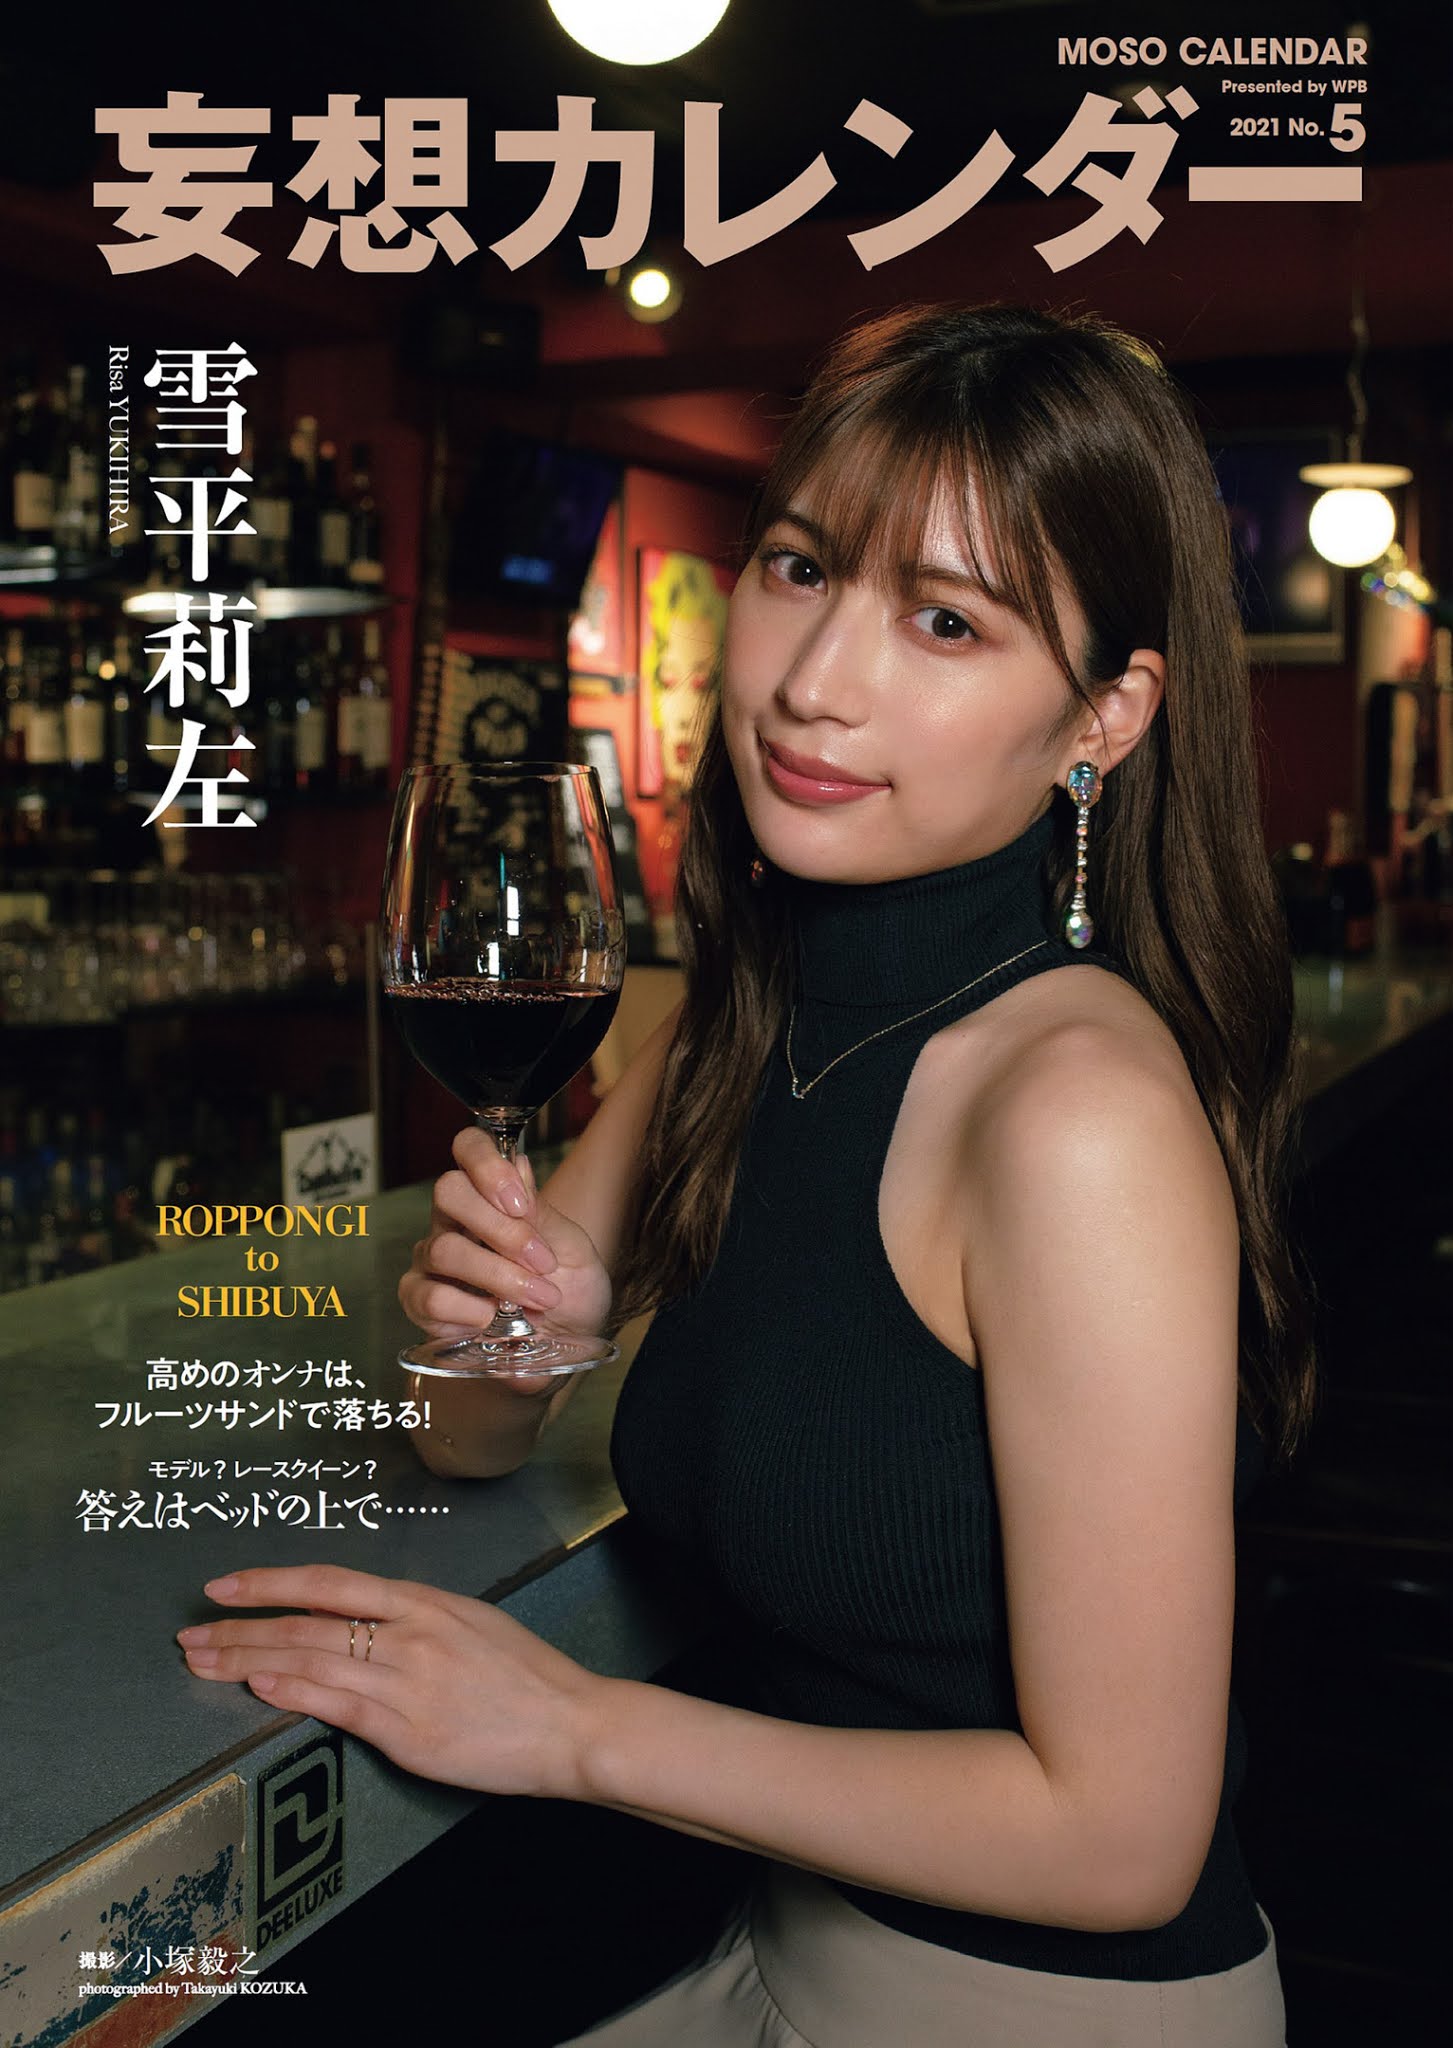 eyval.net : ゆきひら りさ, 雪平莉左, Yukihira Risa - Weekly Playboy, 2021.02.01